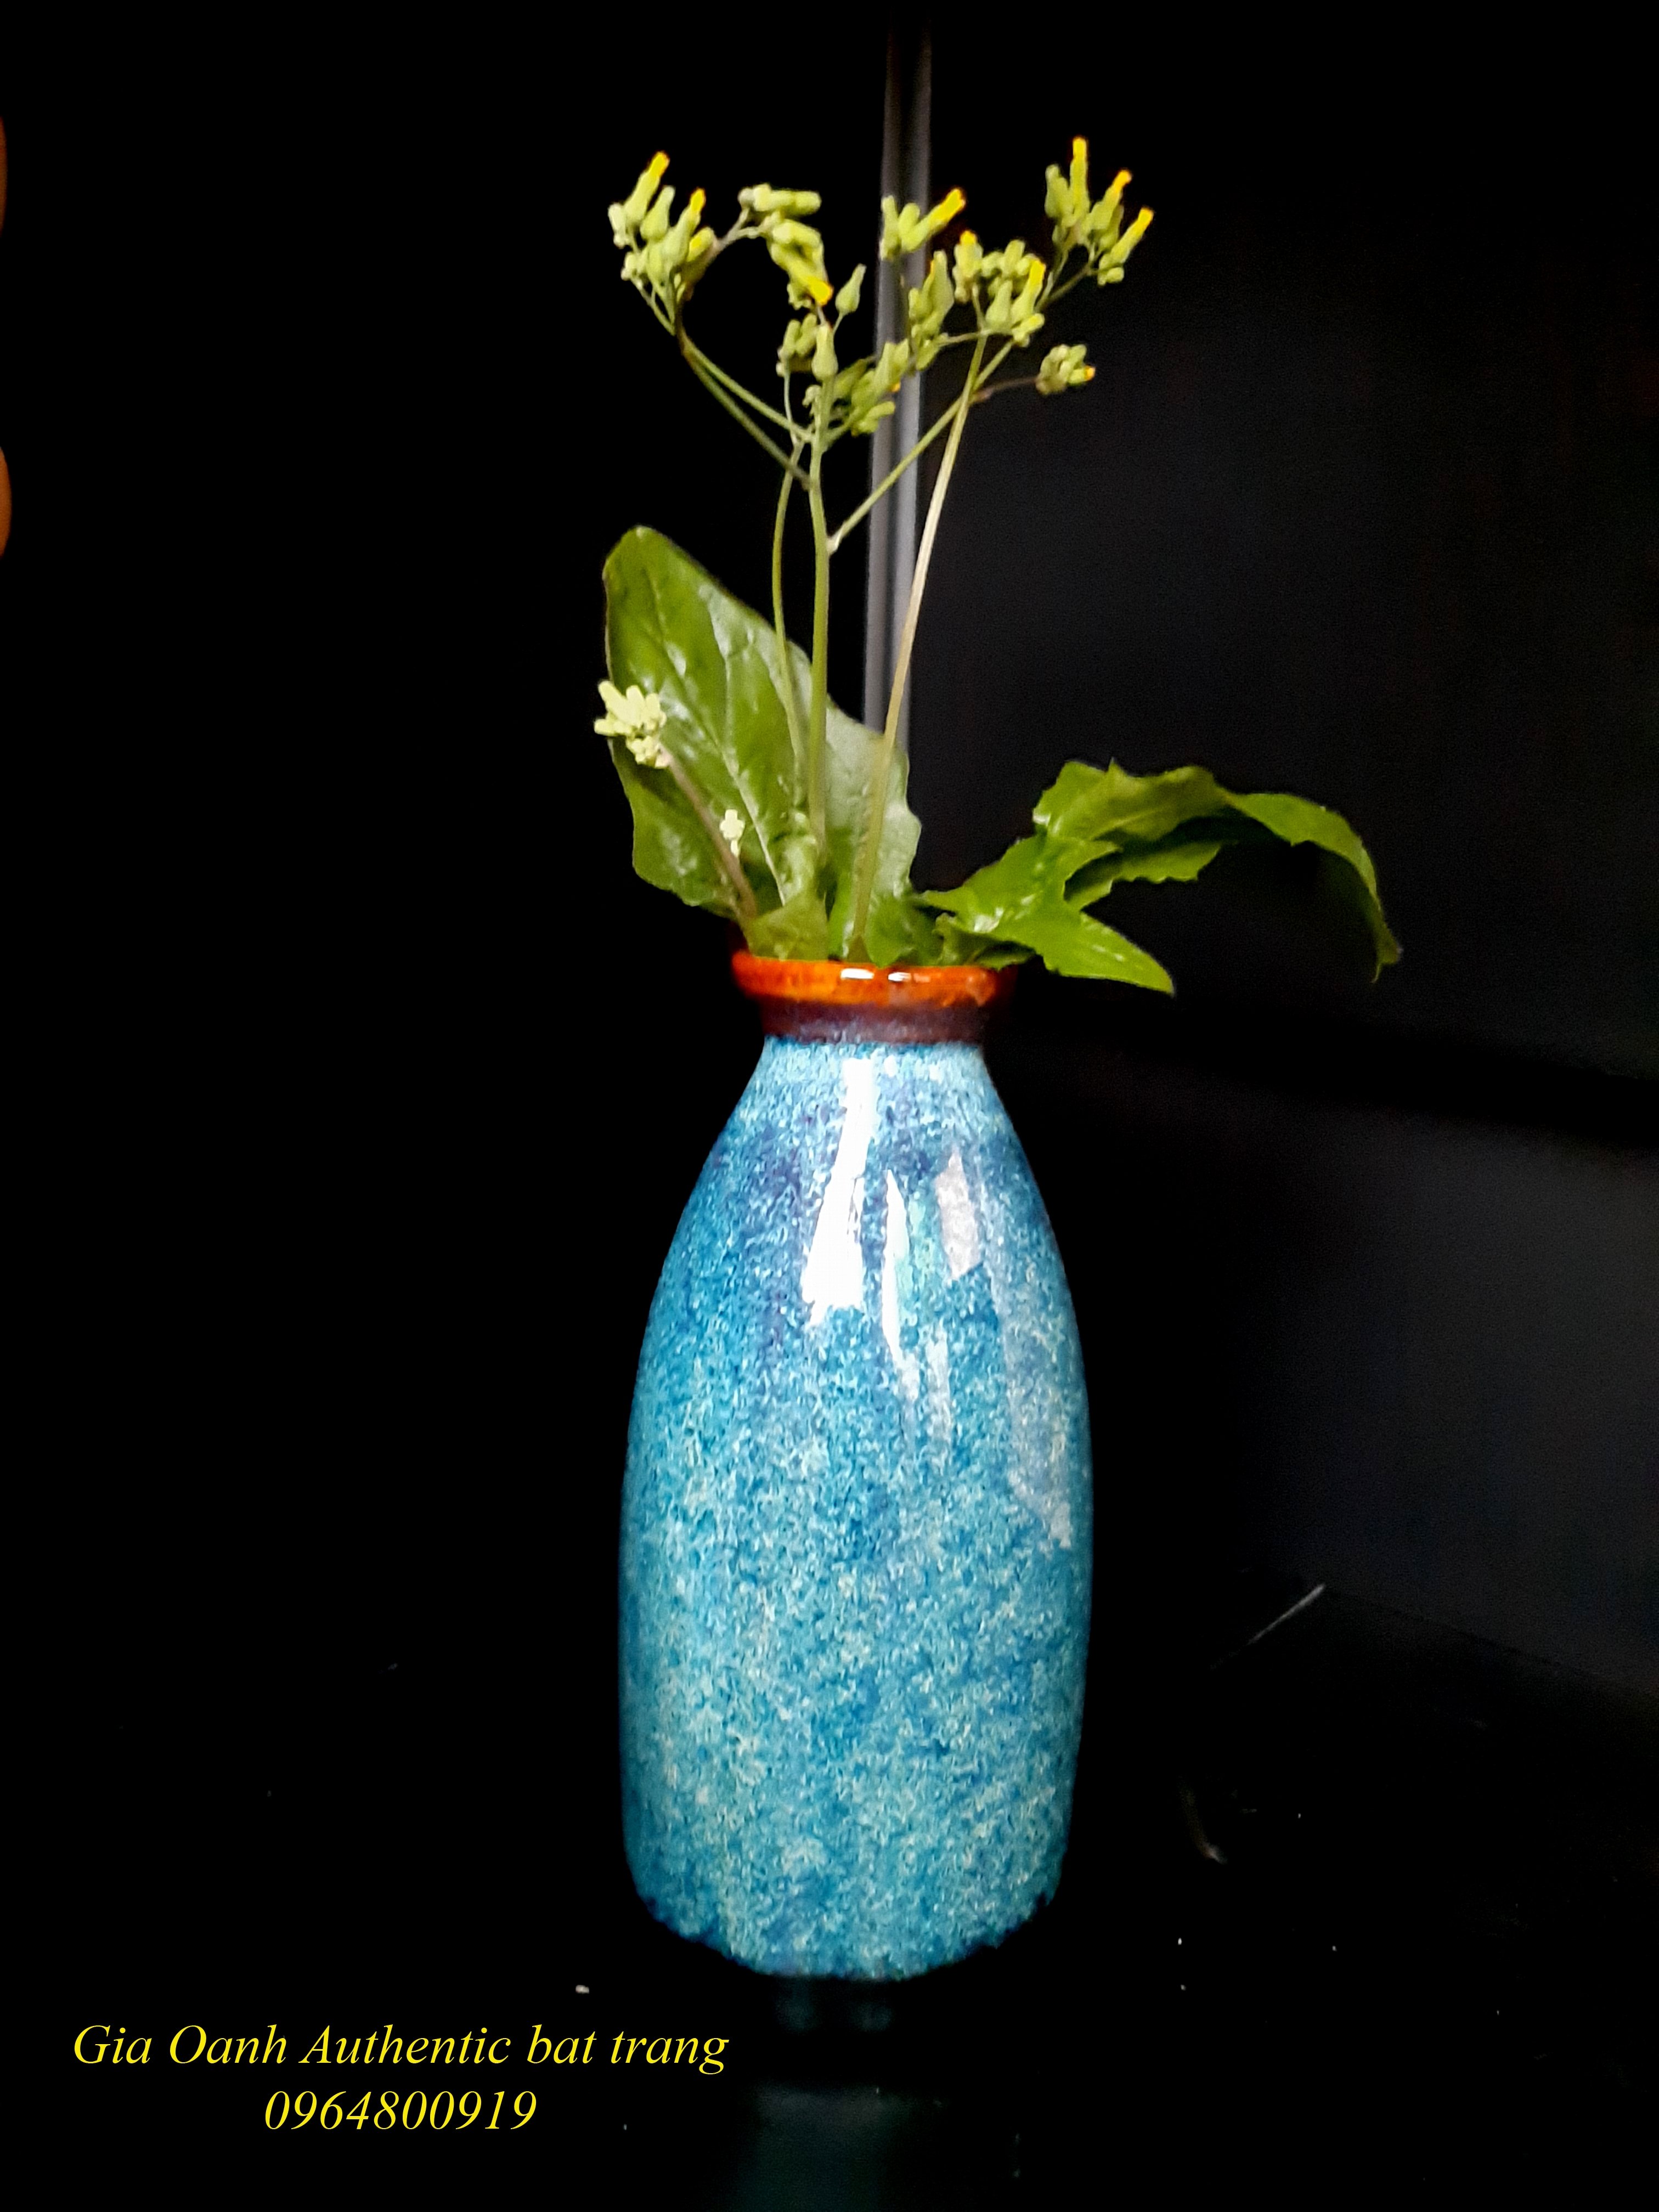 Blue Mini vase/ Bình cắm hoa mini men xanh hỏa biến, sản xuất tại xưởng gốm sứ Gia Oanh authentic bat trang